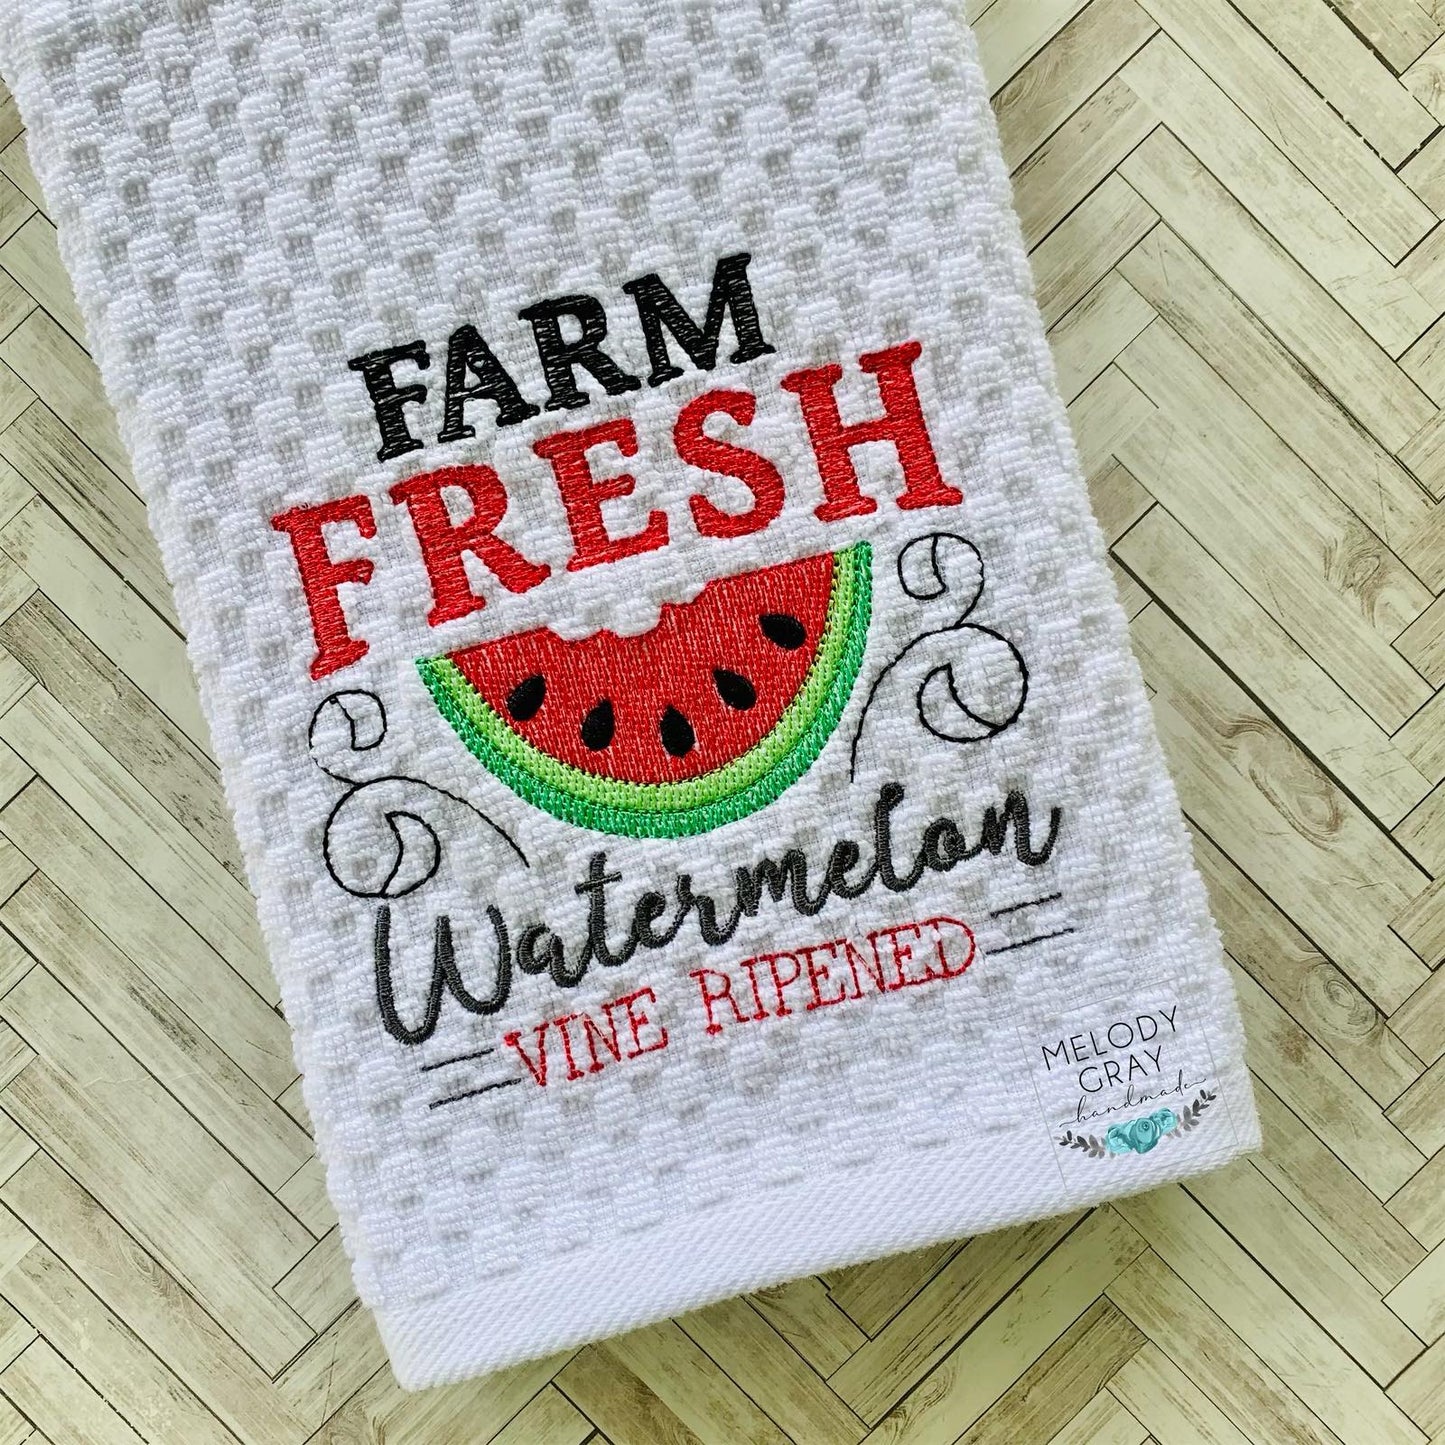 Farm Fresh Watermelon - 3 sizes- Digital Embroidery Design